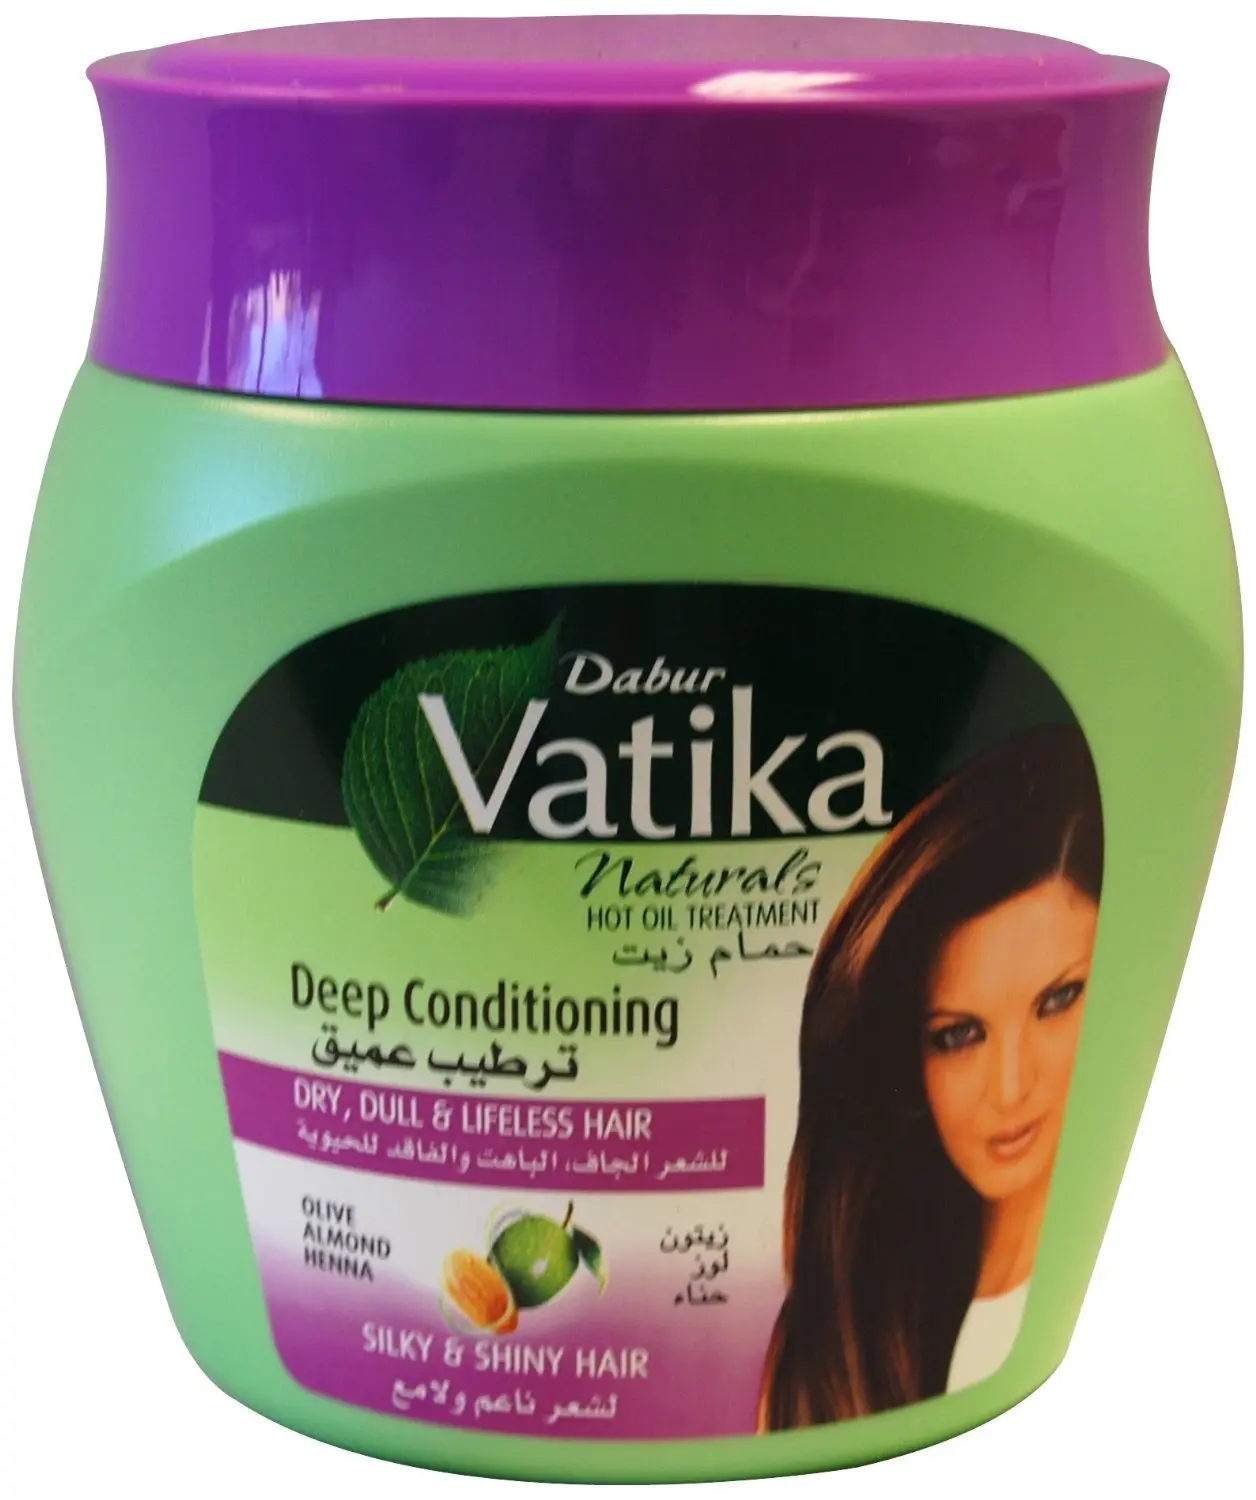 12.99. Dabur Vatika Naturals Deep Conditioning Hot Oil Treatment, 500 Grams...